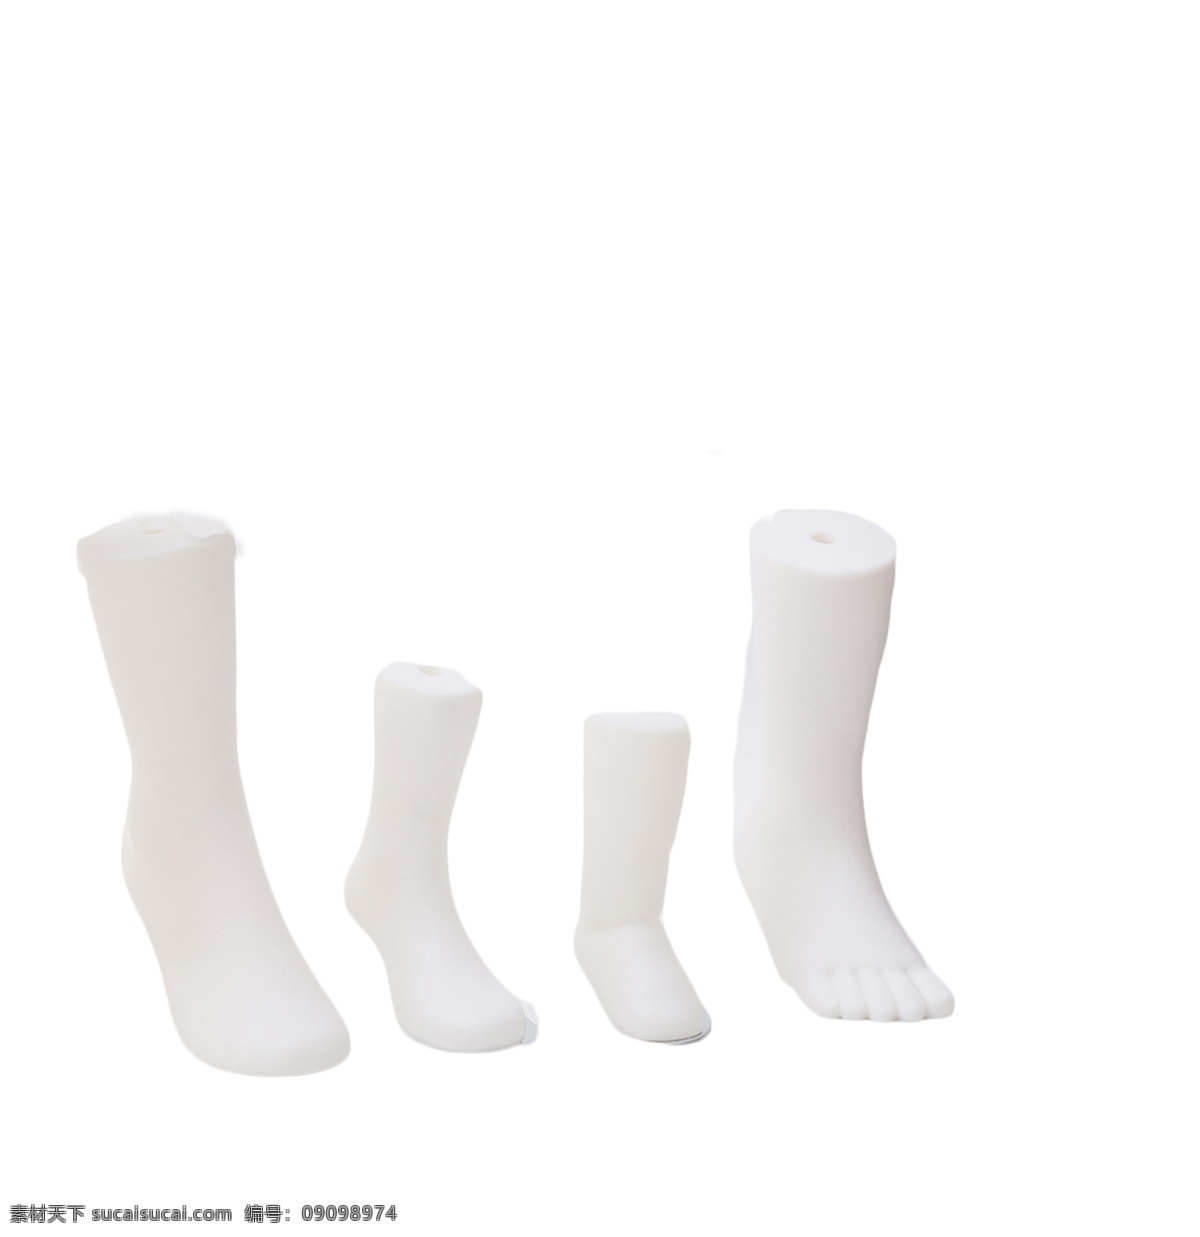 四 只 塑胶 脚 膜 经久耐用 方便展示 一次成型 尺寸齐全 高档不锈钢 无缝脚膜 不会开裂 对袜子无刮伤